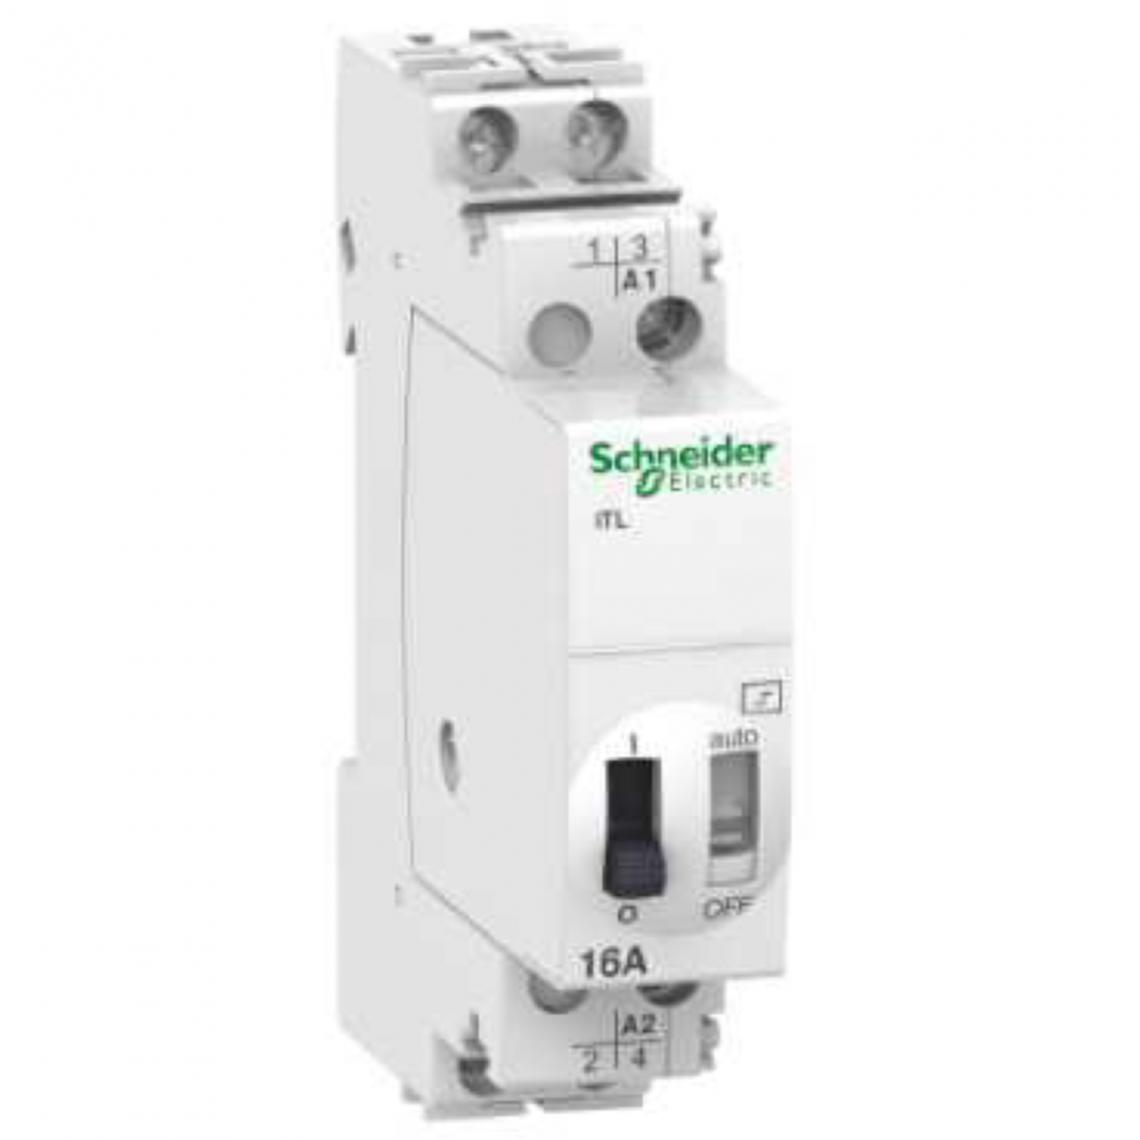 Schneider Electric - télérupteur - schneider - 16a - 2no - 12vca / 6vcc - schneider electric a9c30012 - Télérupteurs, minuteries et horloges